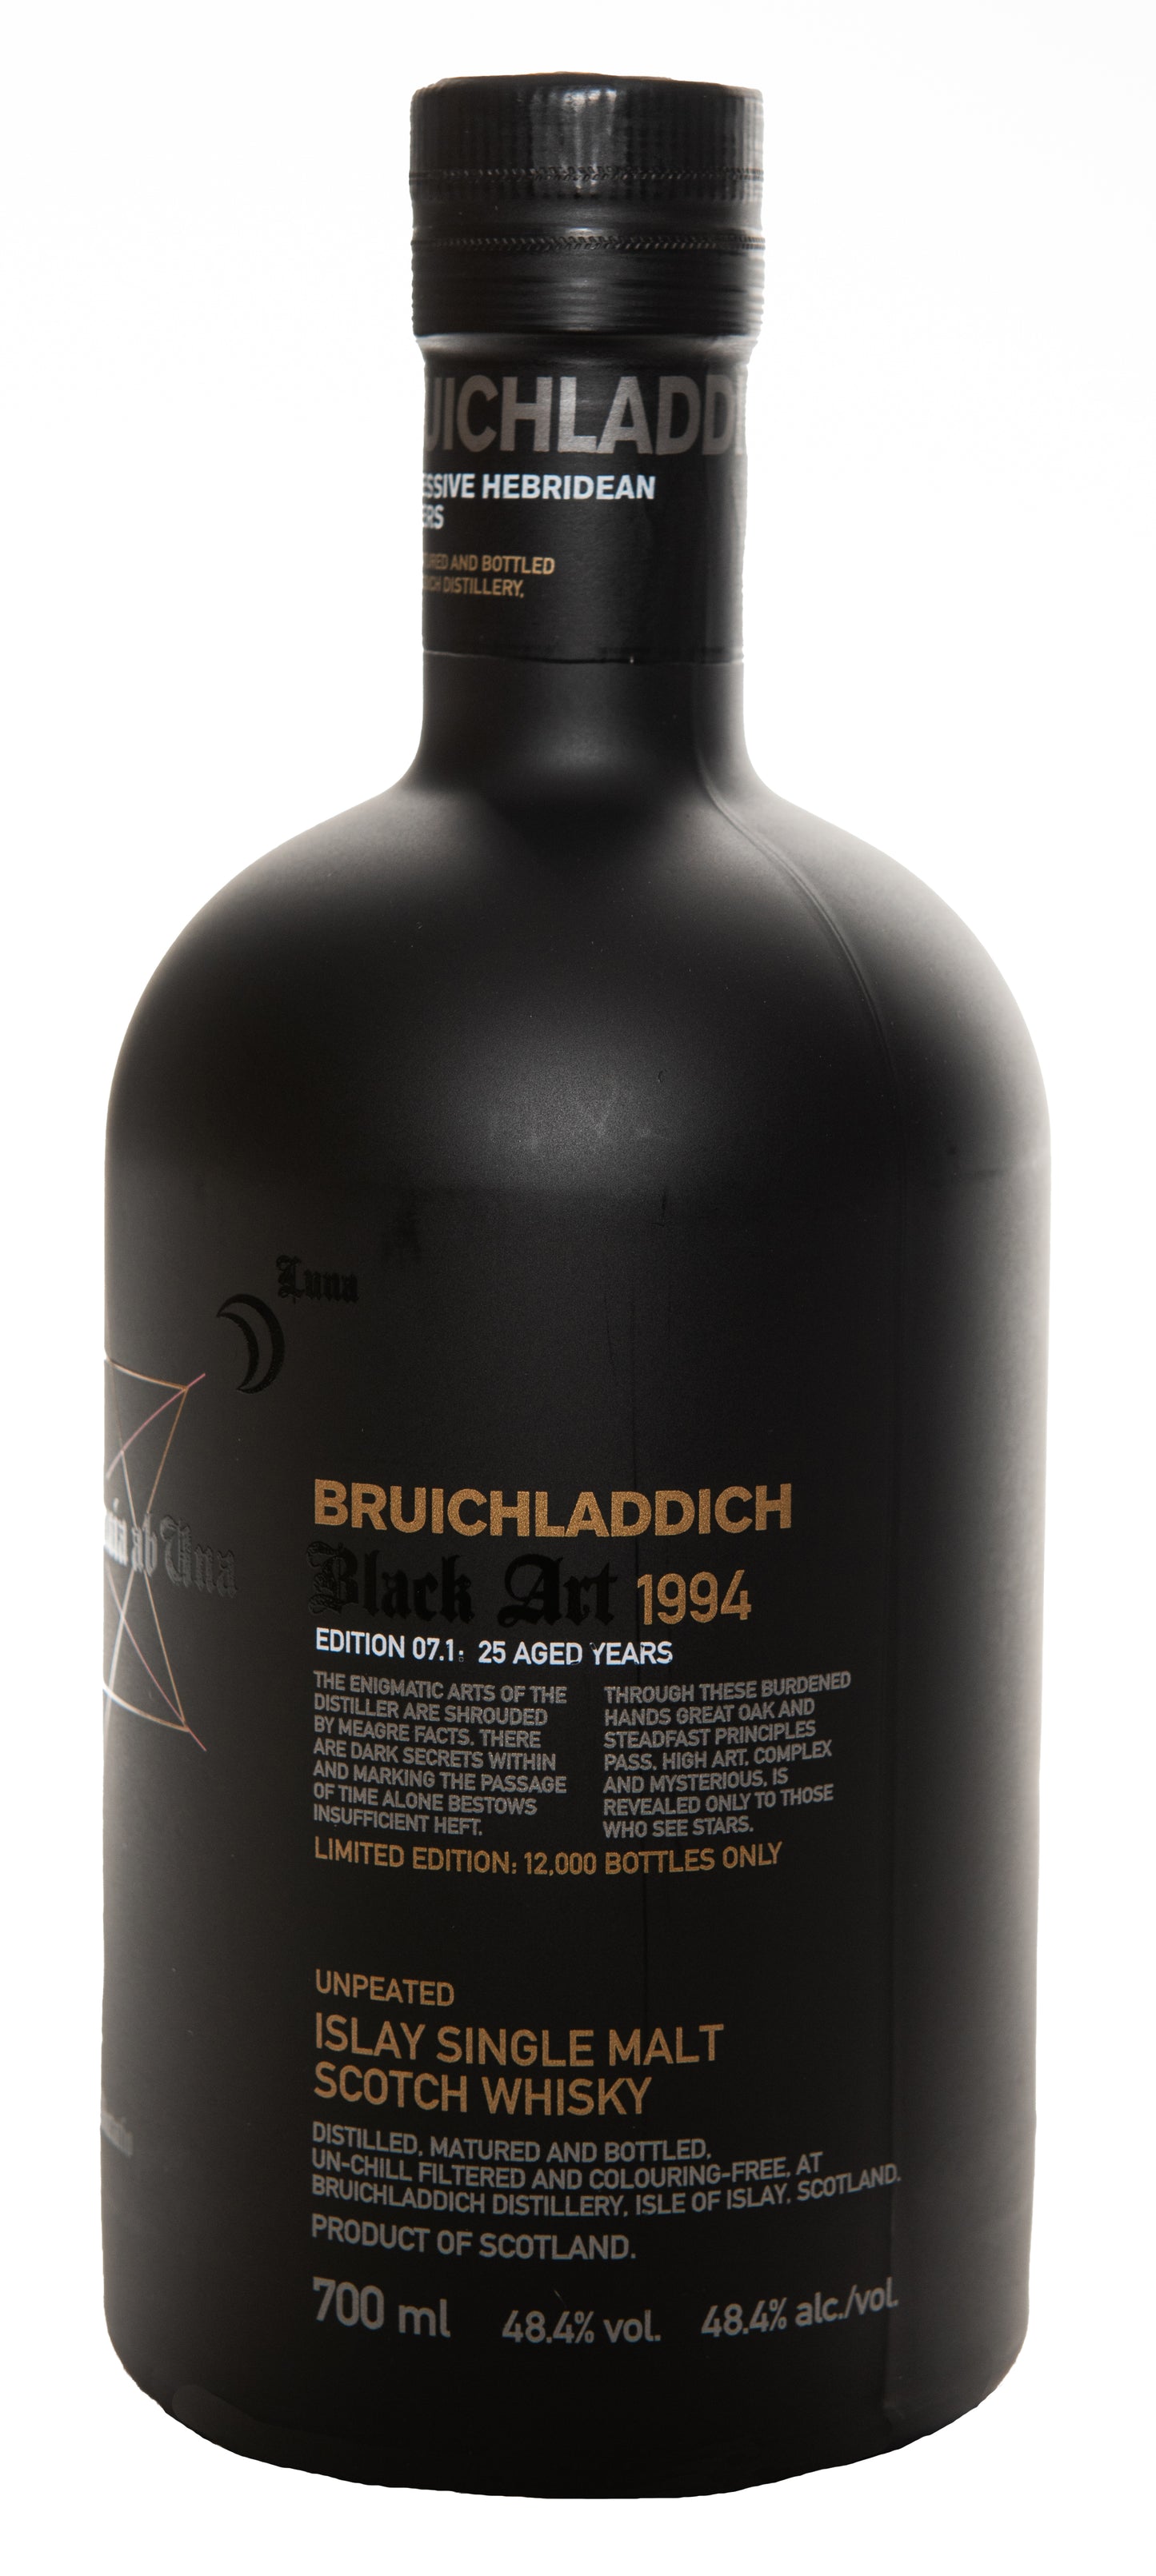 Bruichladdich Black Art 7.1 (ohne GB)